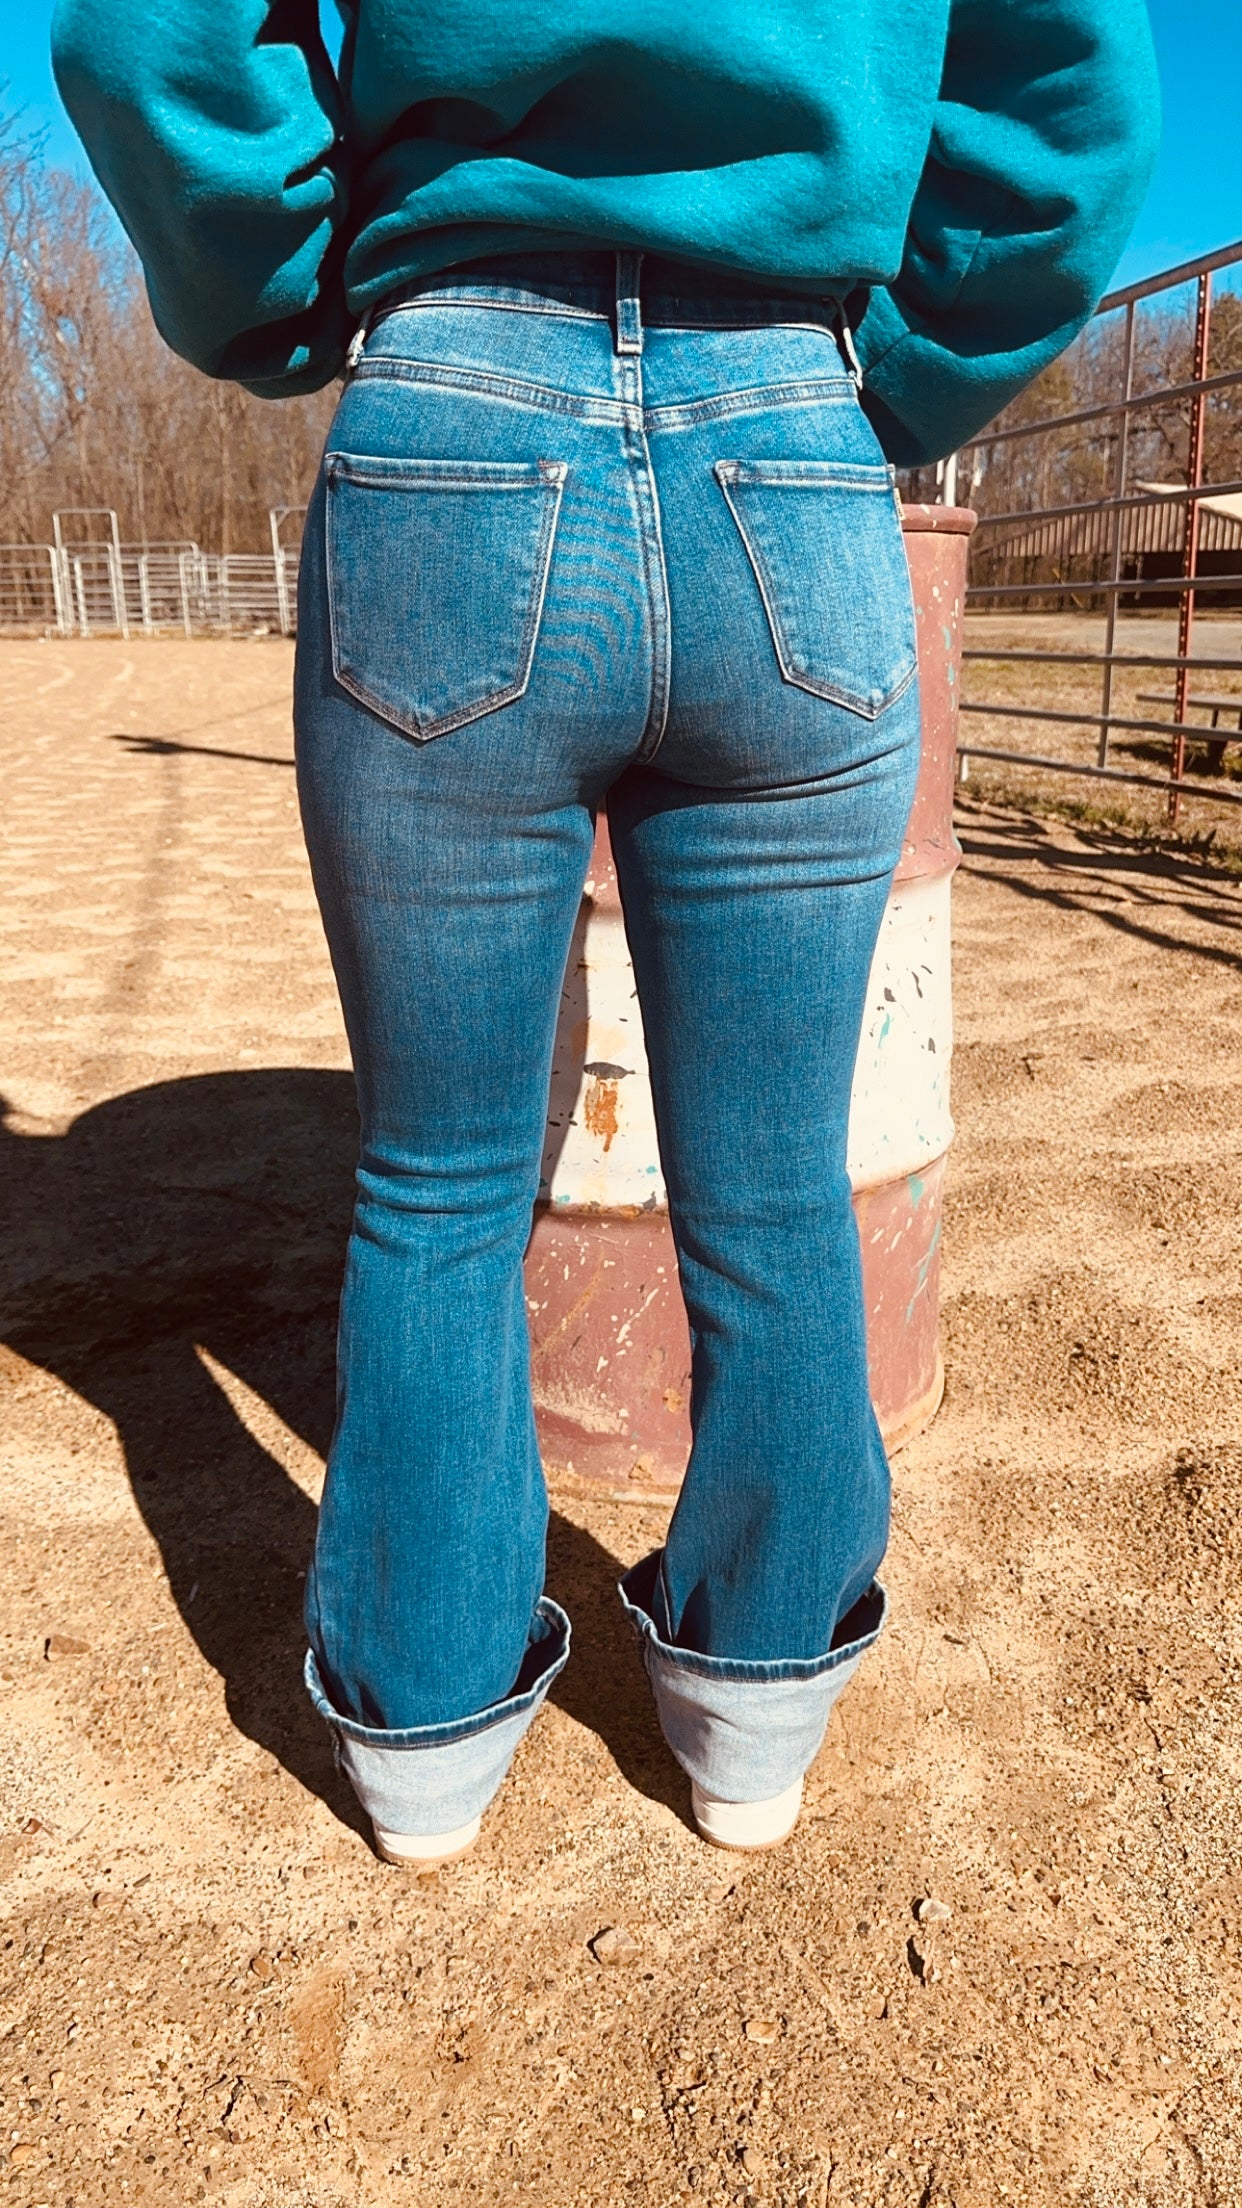 The Loretta flare jeans